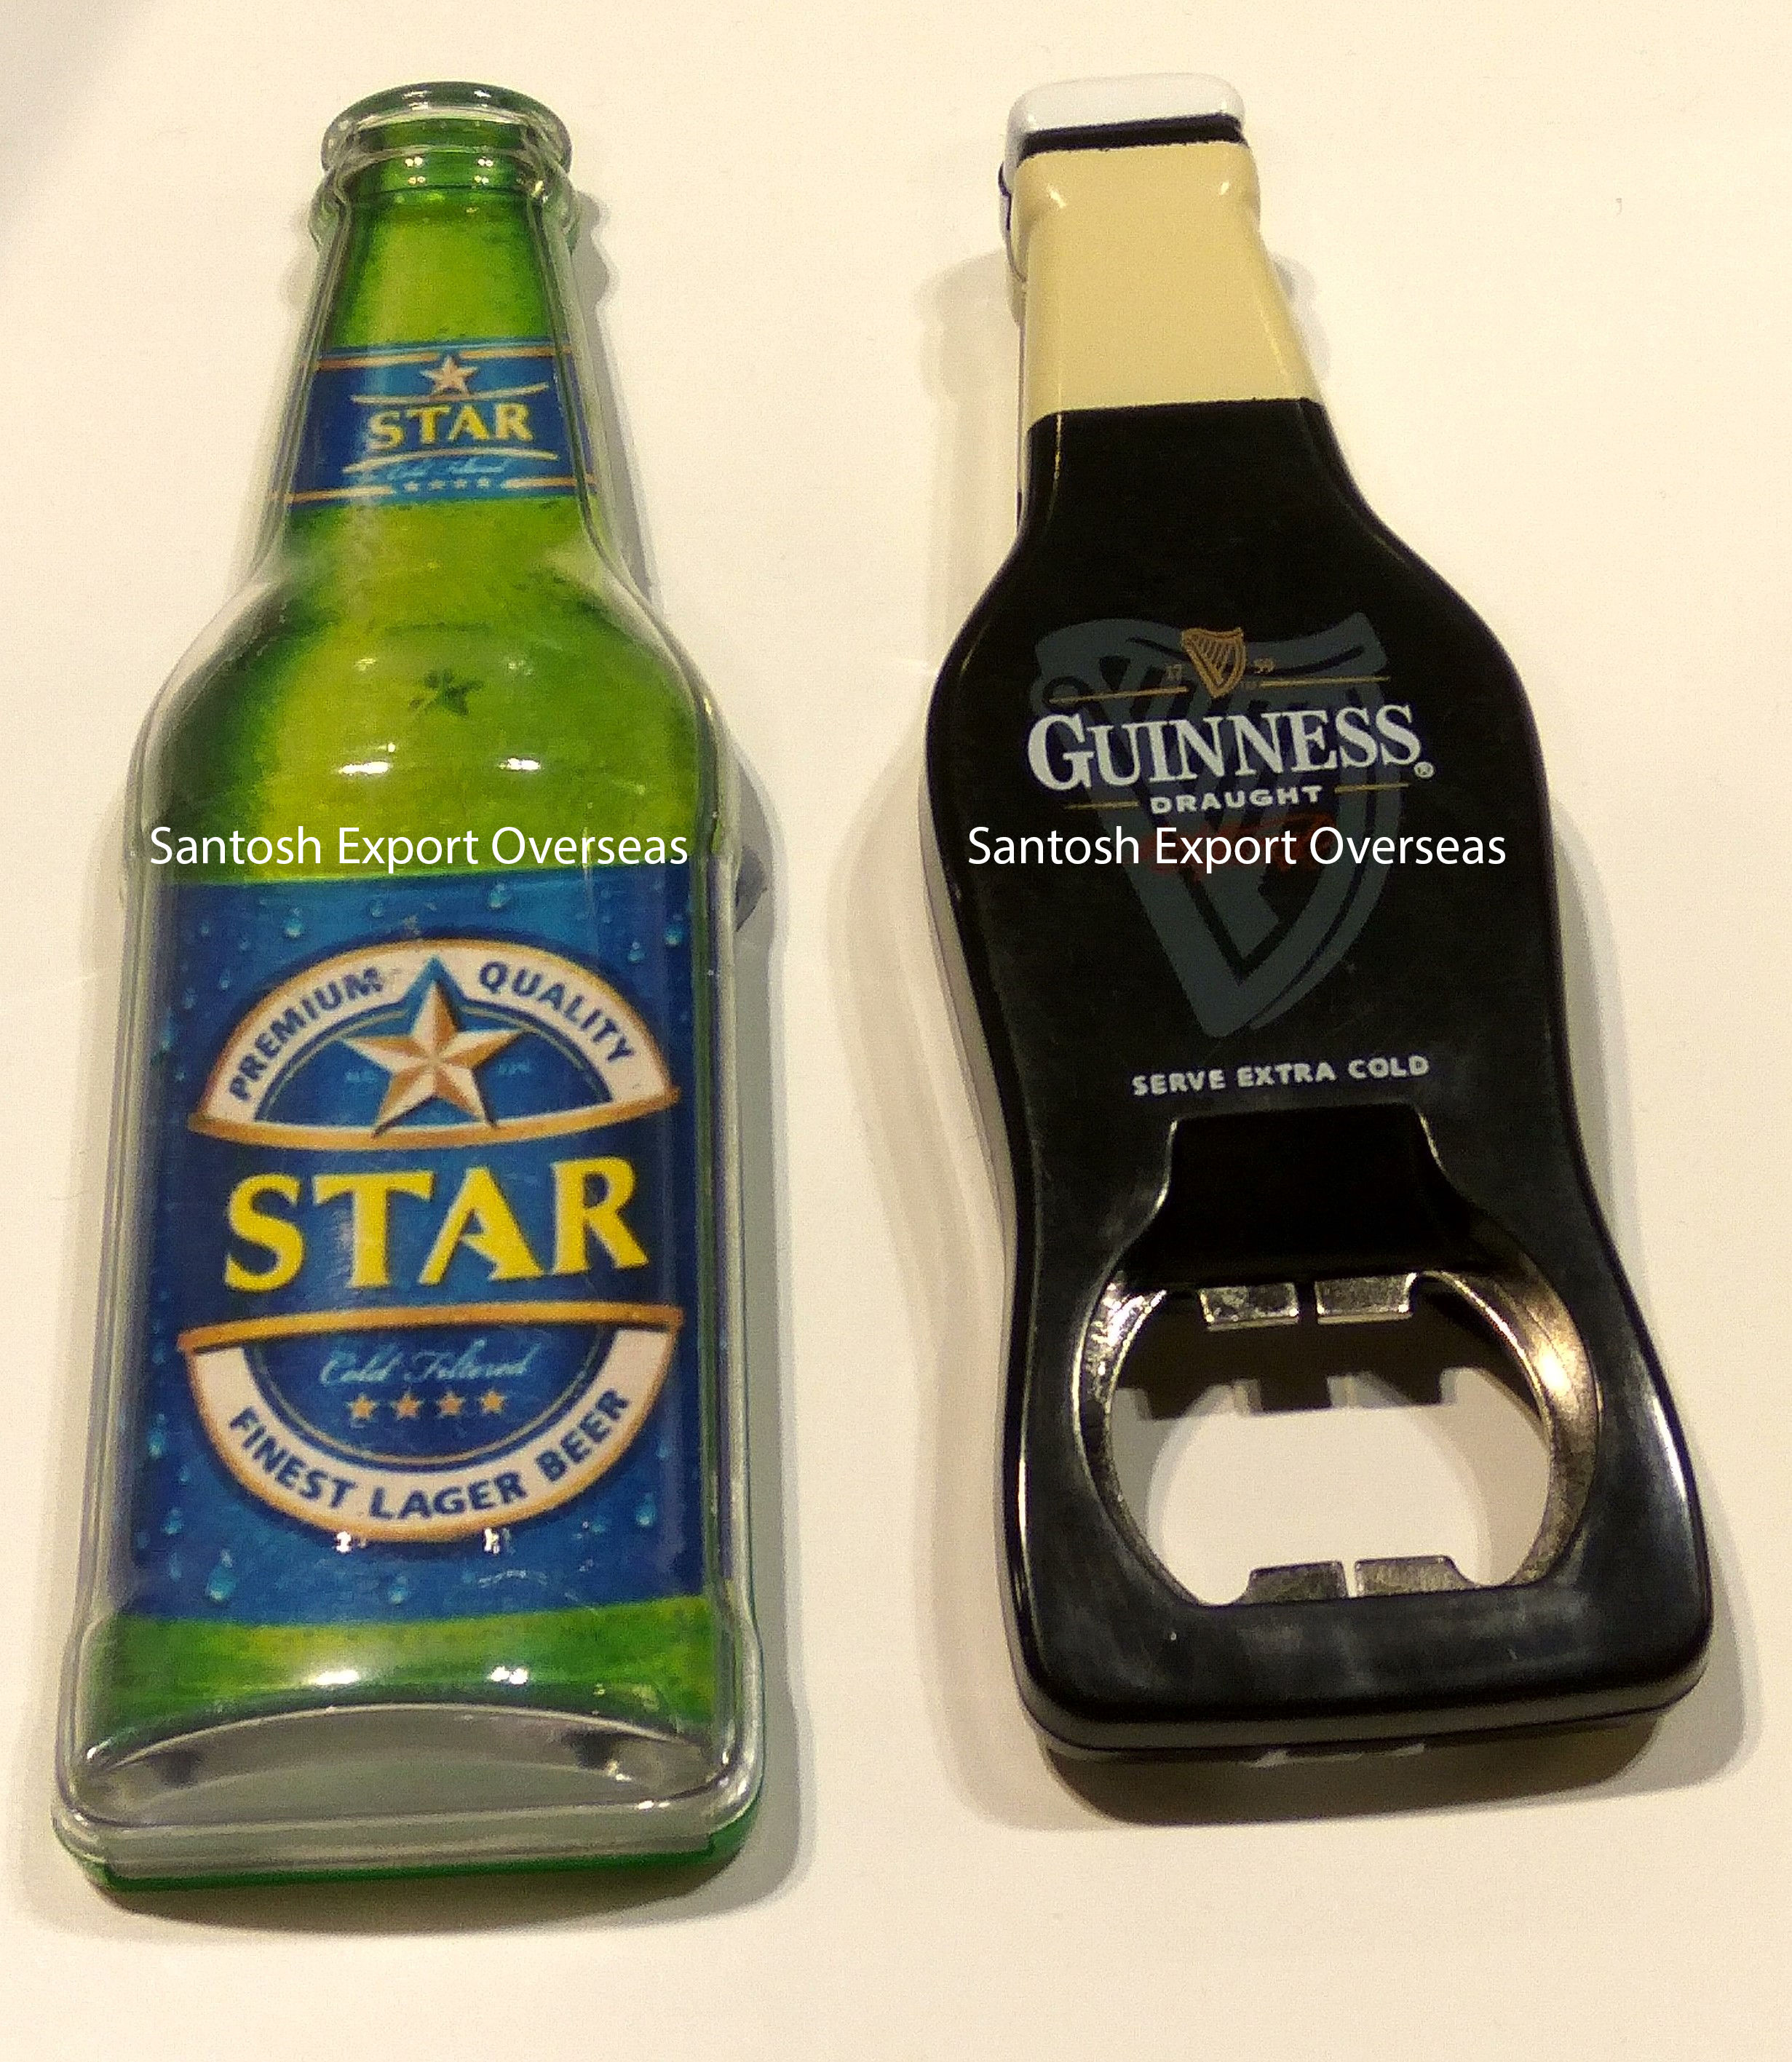 Stainless Steel bottle opener